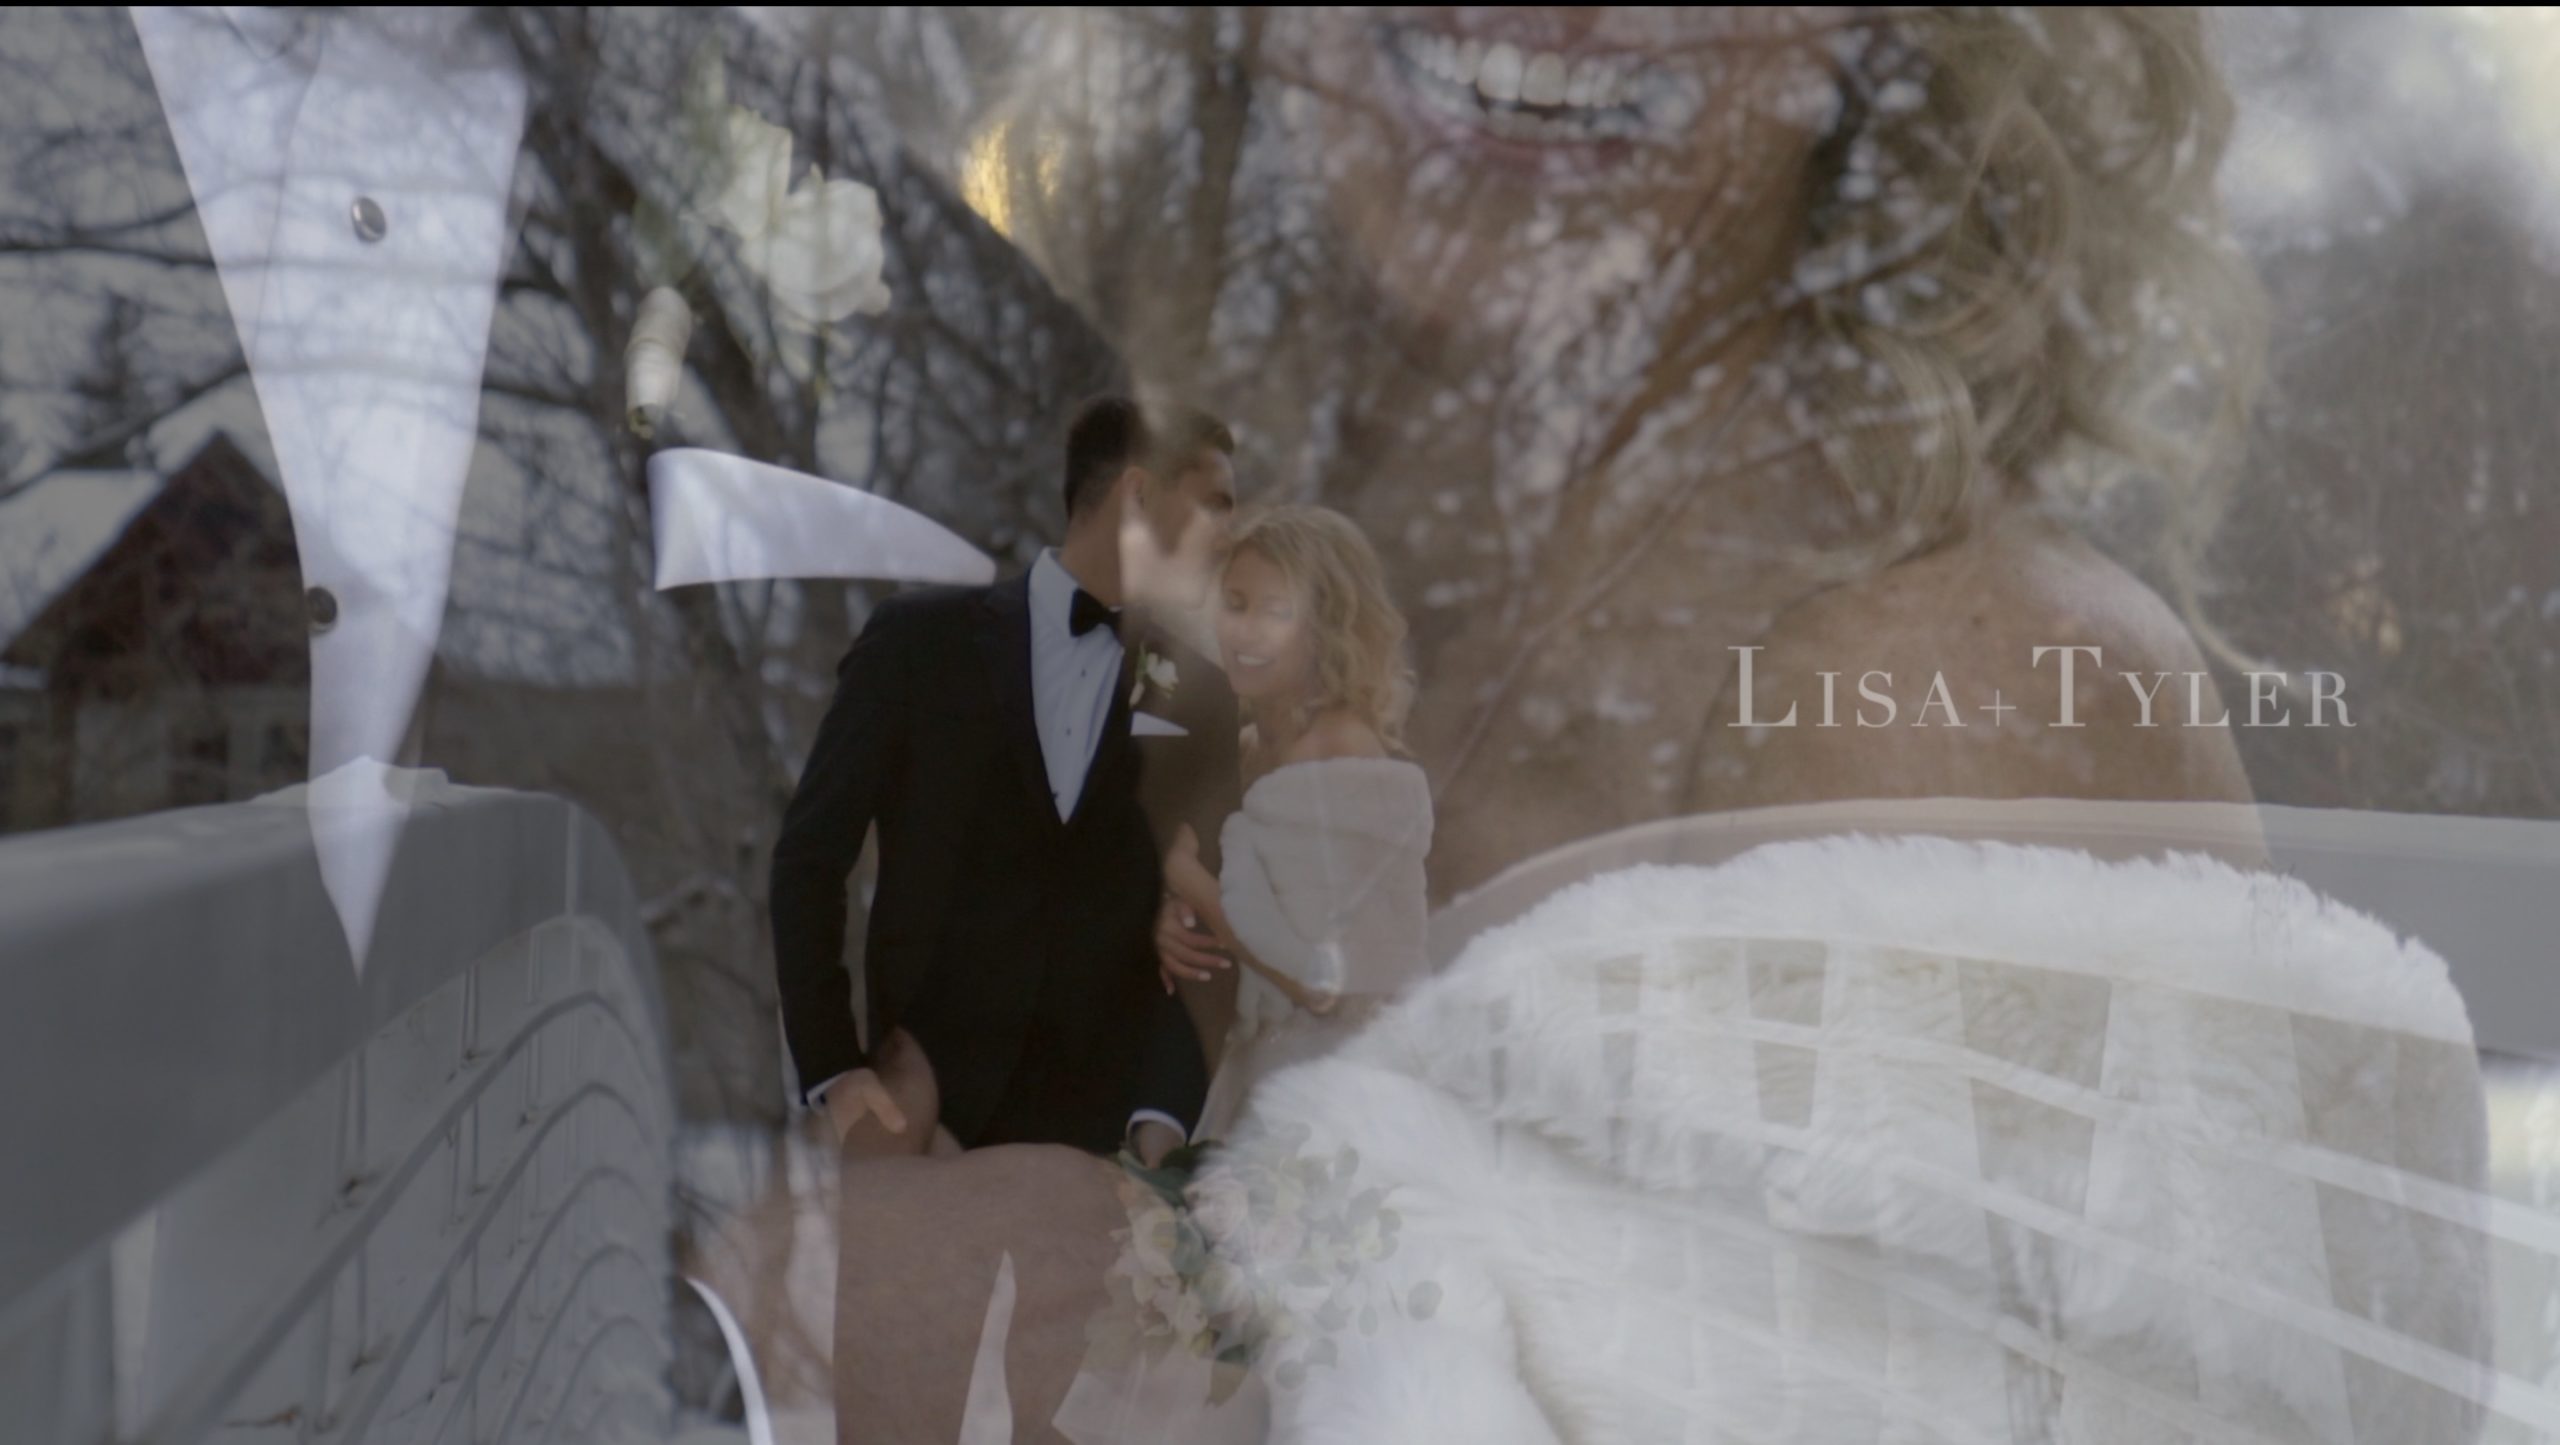 Lisa and Tyler's NYE wedding